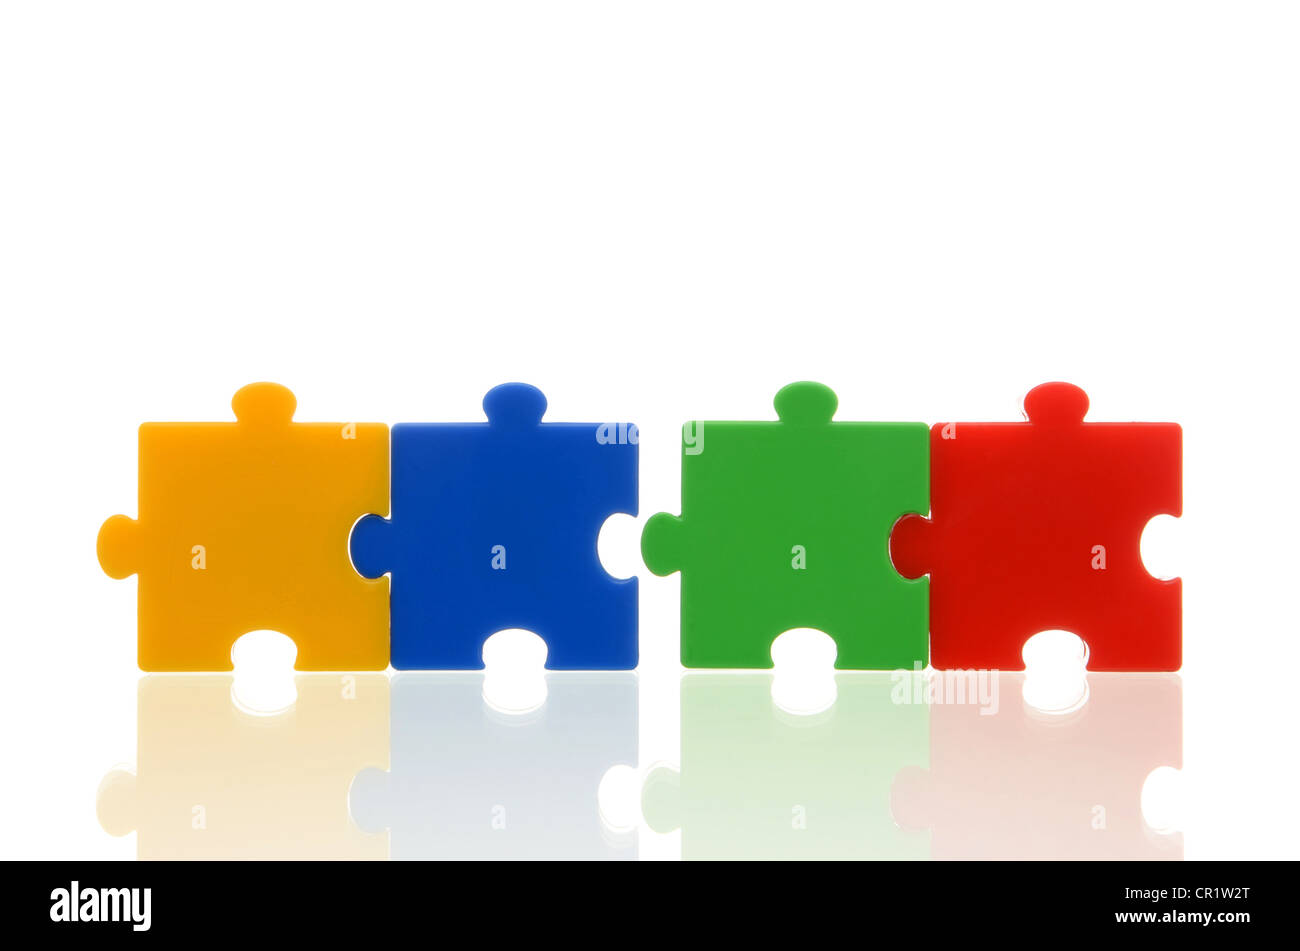 Pièces de puzzle de couleur différentes, deux paires de deux pièces du puzzle, l'image symbolique pour l'équipe, série Banque D'Images